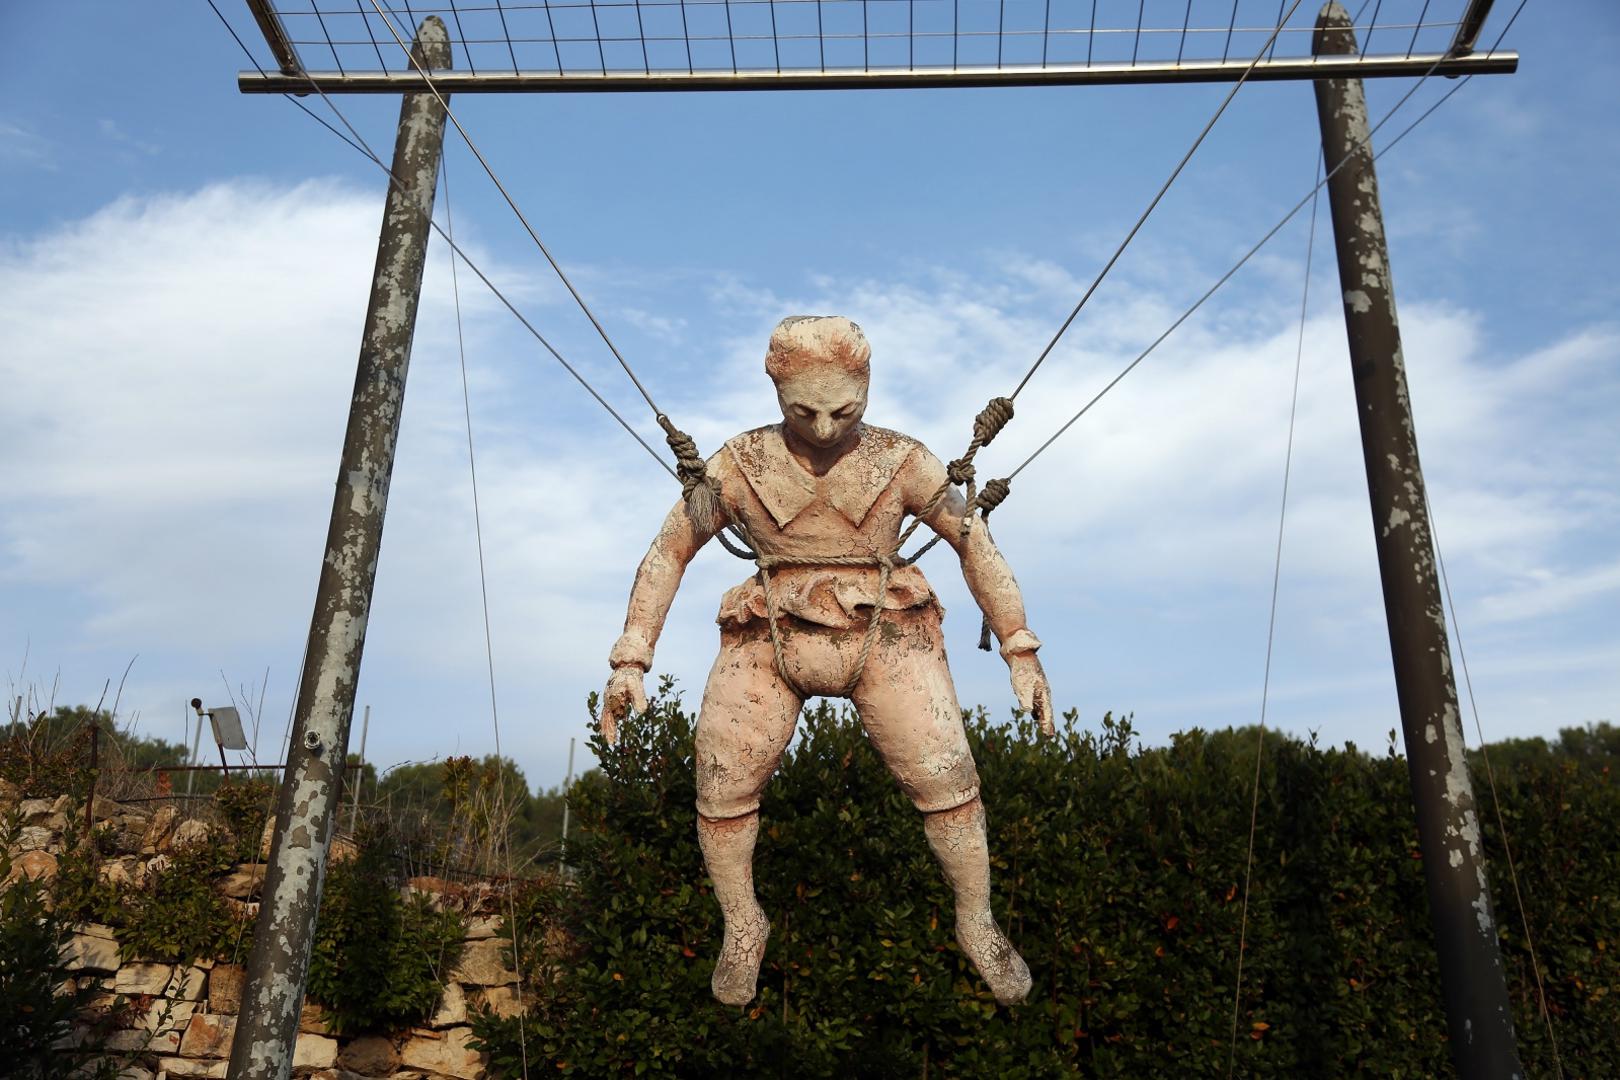 Faust Vrančić izumio je napravu kojoj je dao ime Homo volans, a bio je to padobran, izum koji mnogi pogrešno pripisuju Leonardu da Vinciju. Baš zbog toga ime aerodroma naglasilo bi njegovo hrvatsko porijeklo